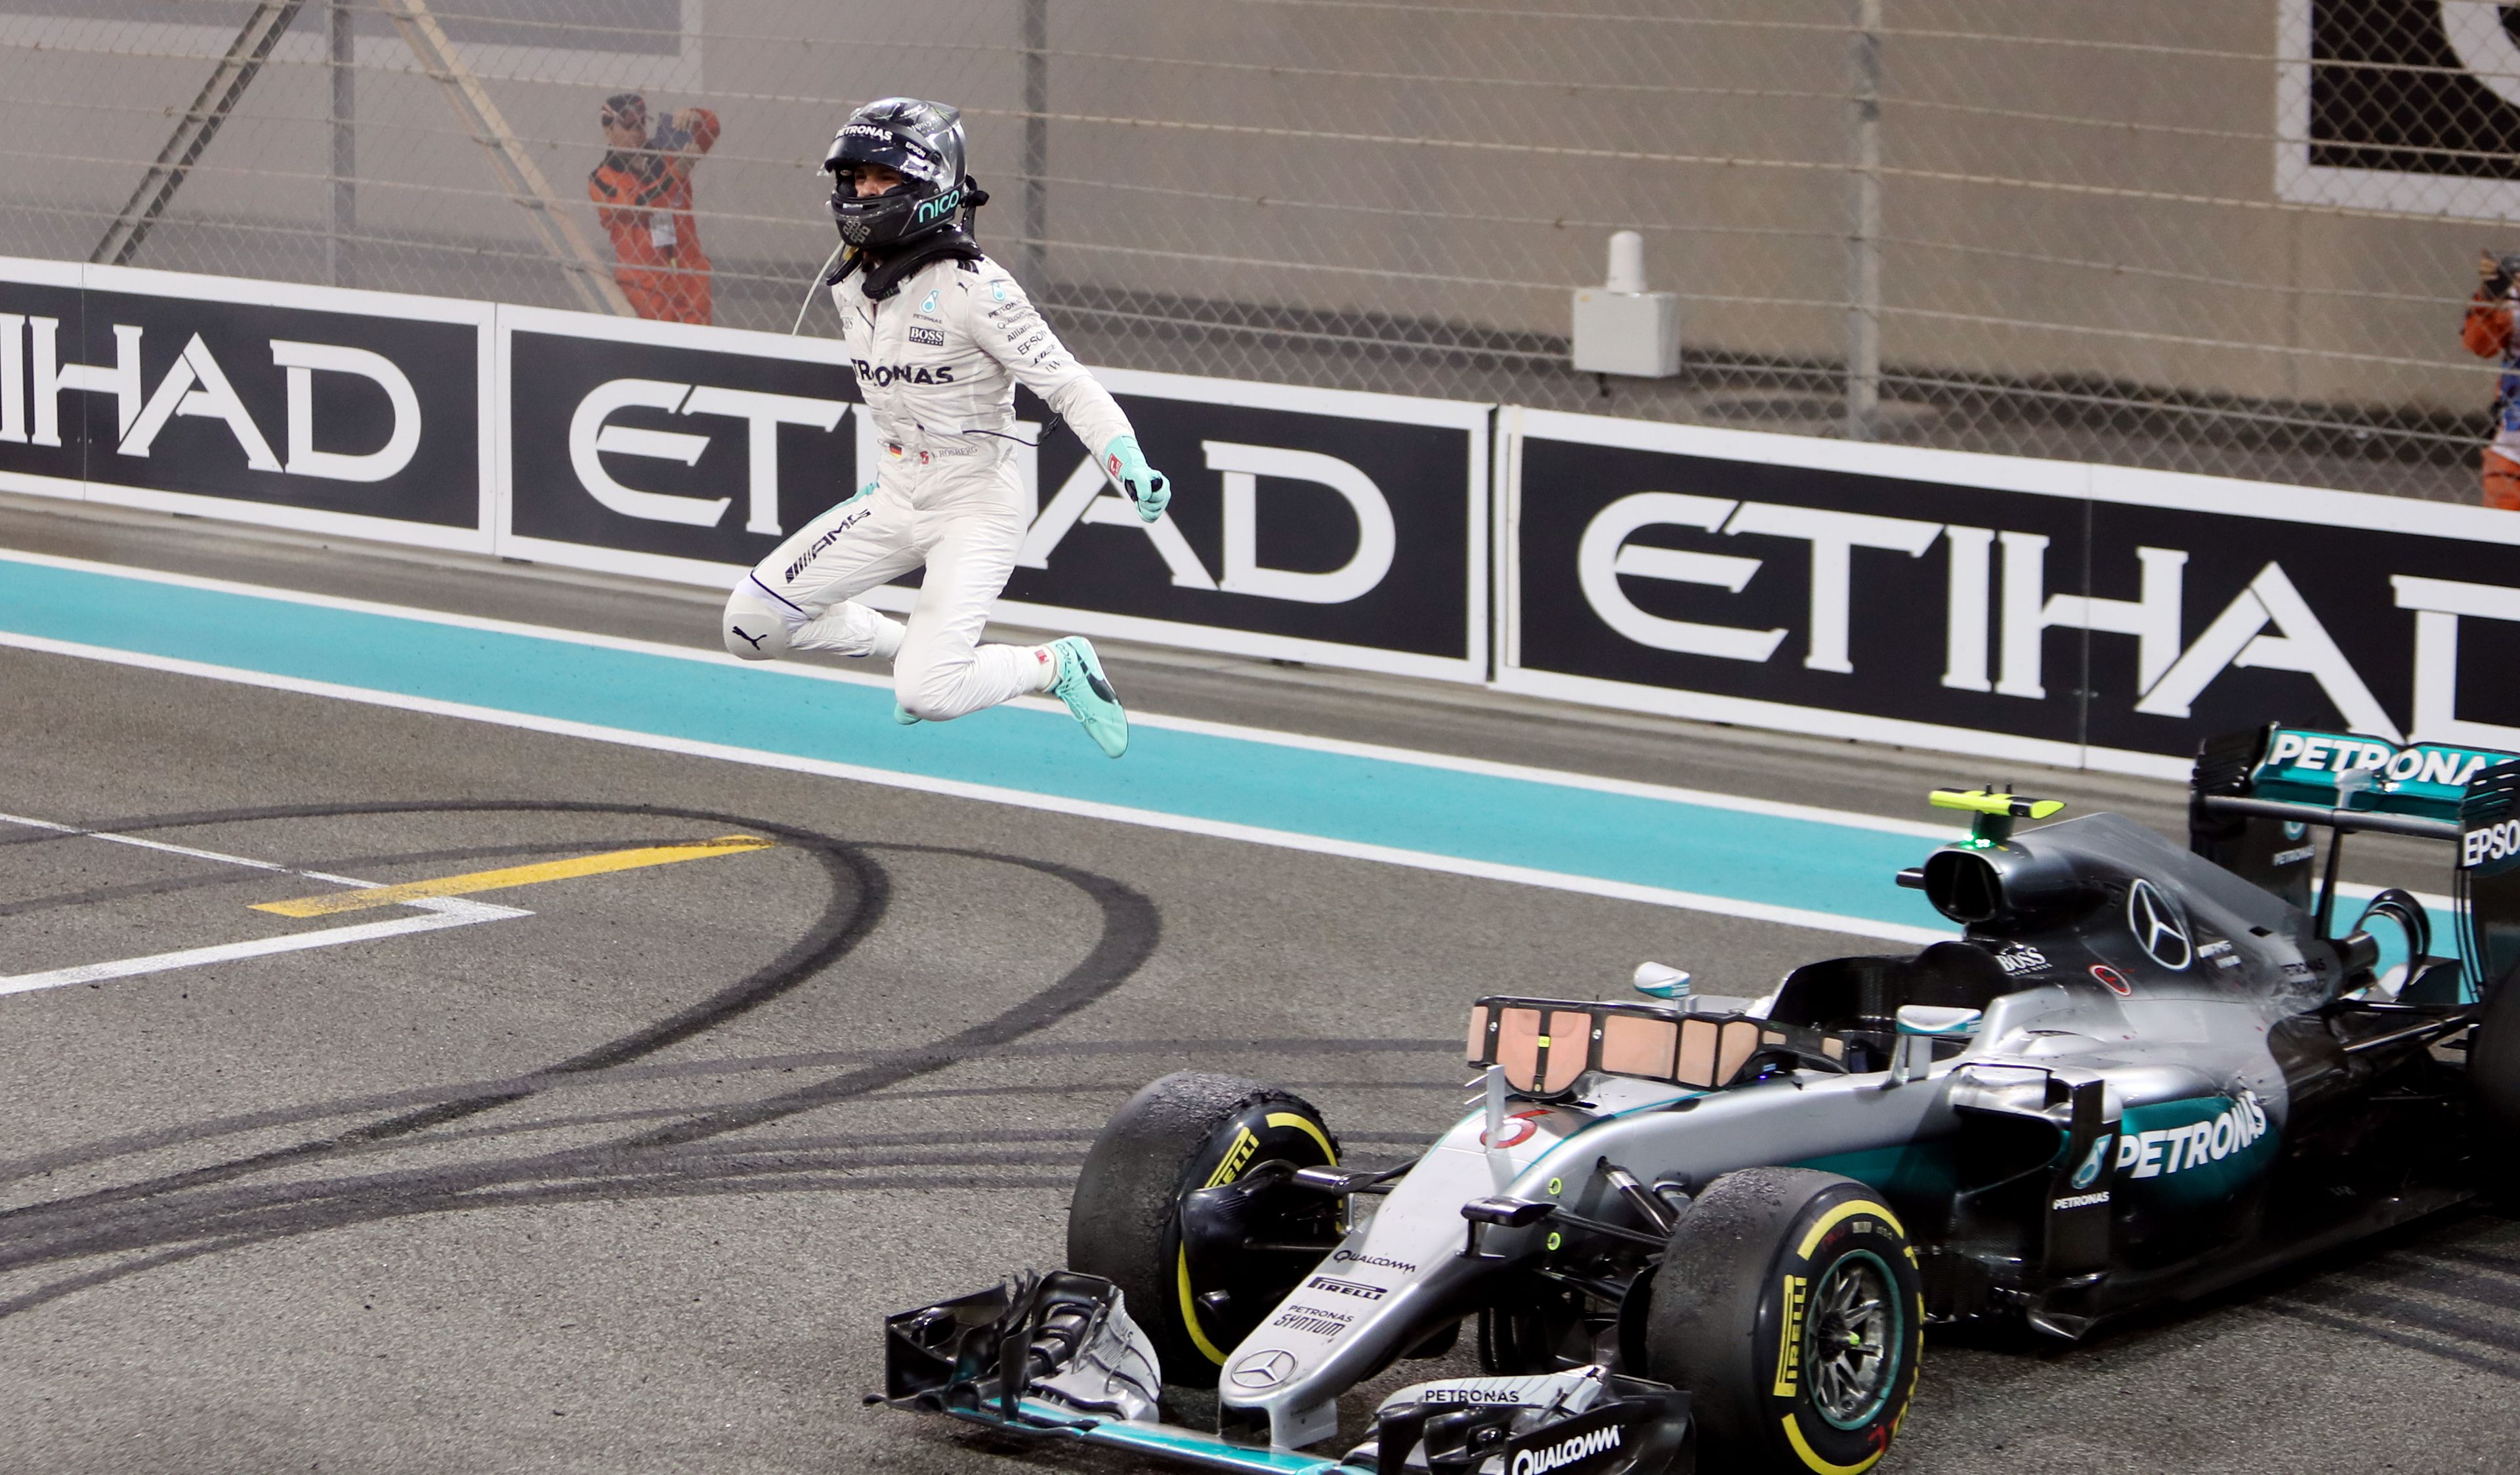 Álomból valóság, a 2016-os Abu-Dhabi nagydíjon Rosberg elérte azt, amit csak kevesen: győzedelmeskedett Hamilton felett/ Foto: Northfoto